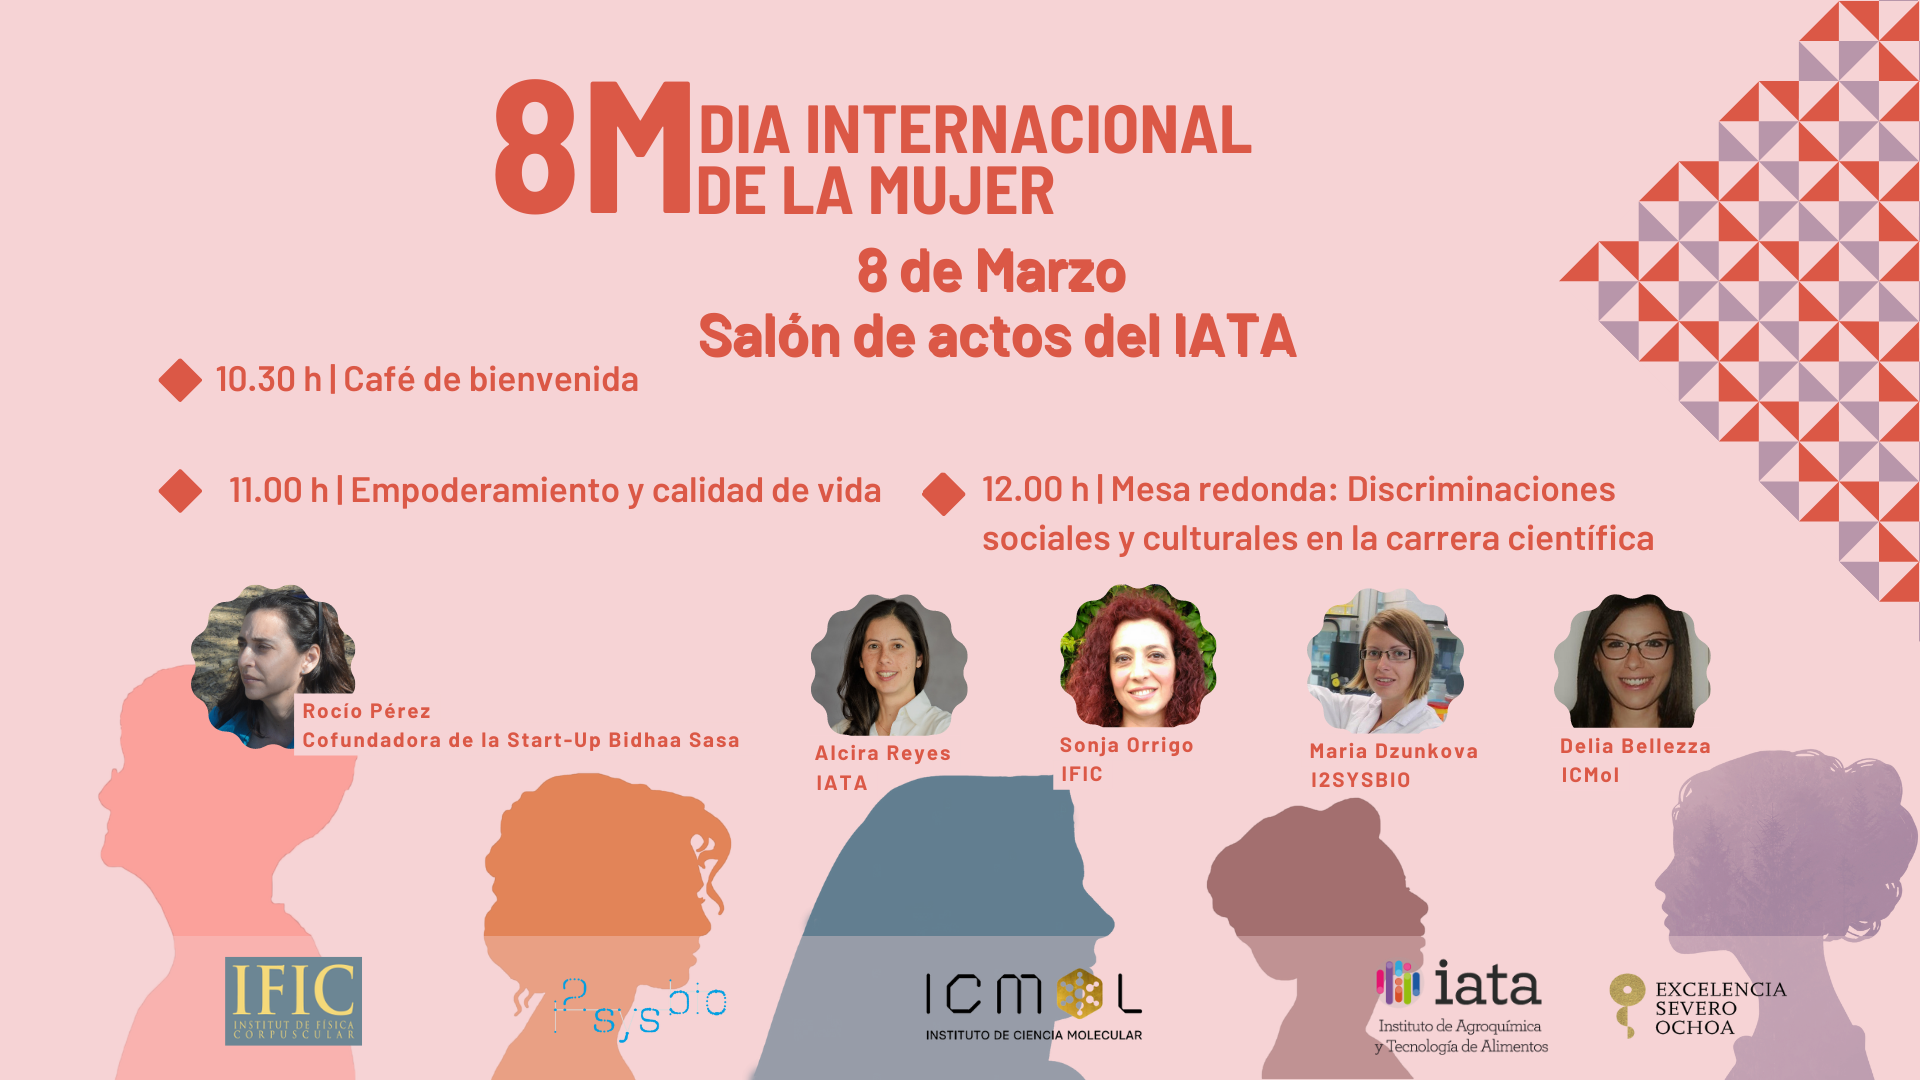 IATA, ICMol, I2SysBio y el IFIC organizan la conferencia 